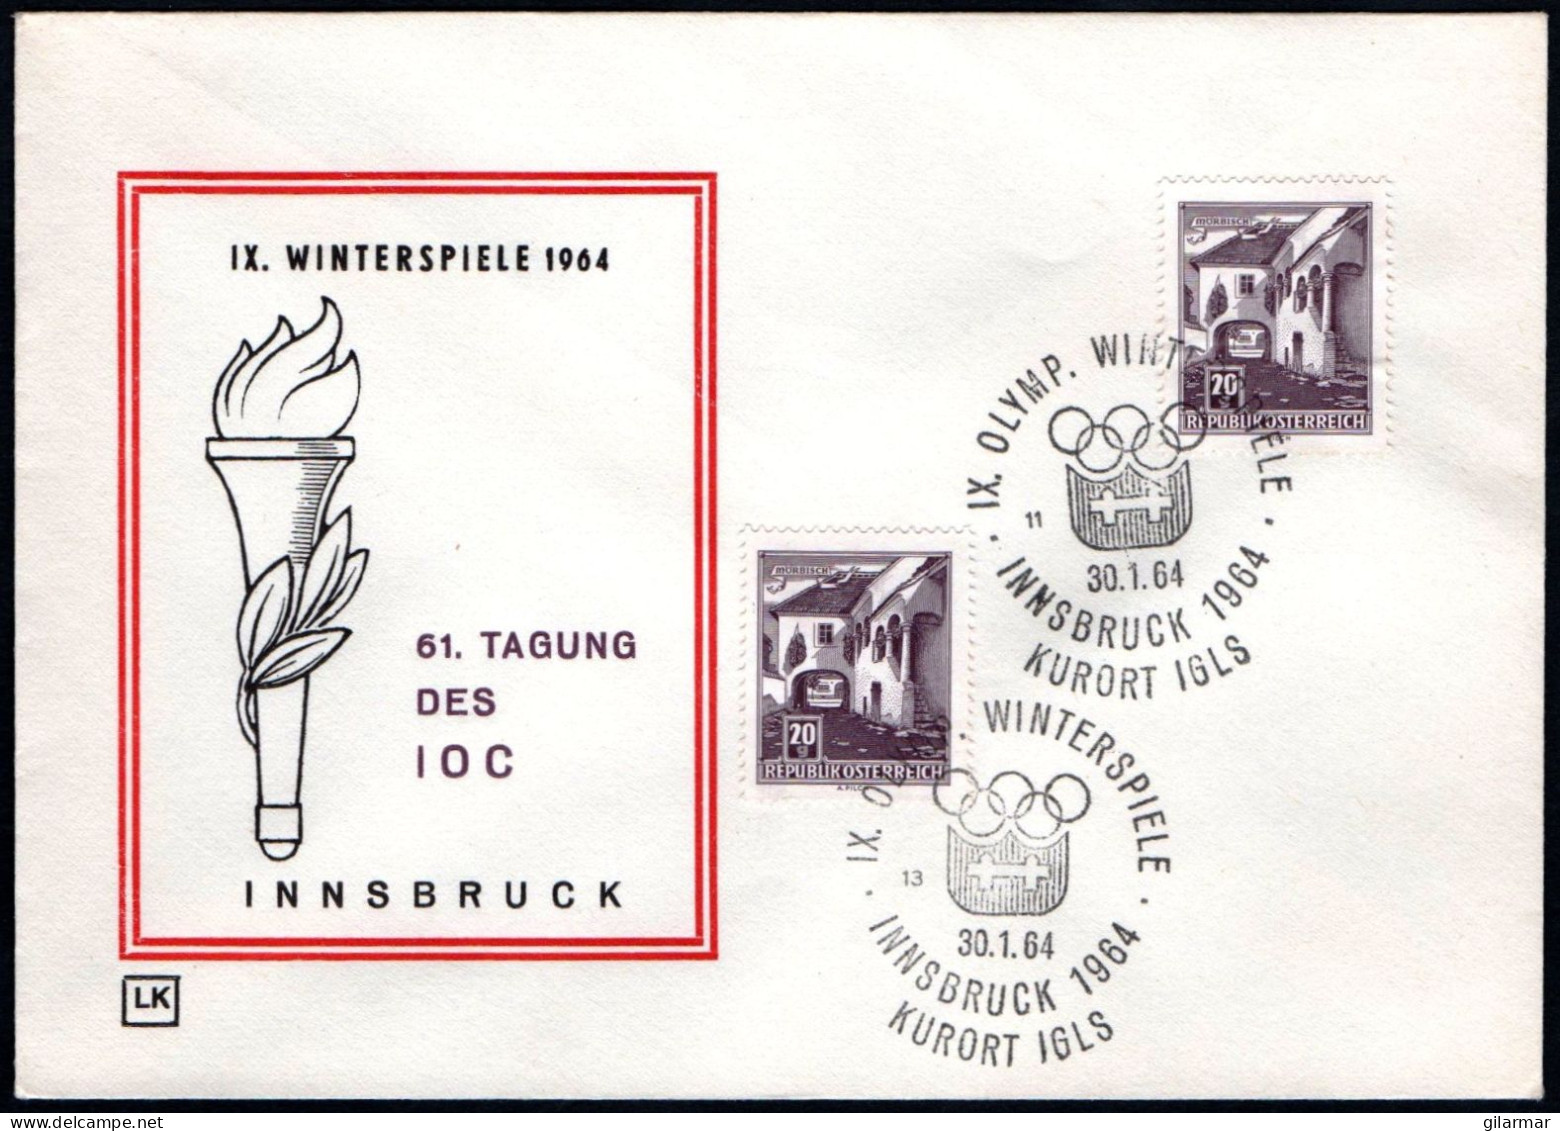 AUSTRIA KURORT IGLS 1964 - IX OLYMPIC WINTER GAMES - INNSBRUCK '64 - CANCELS # 13 & 11 - G - Winter 1964: Innsbruck